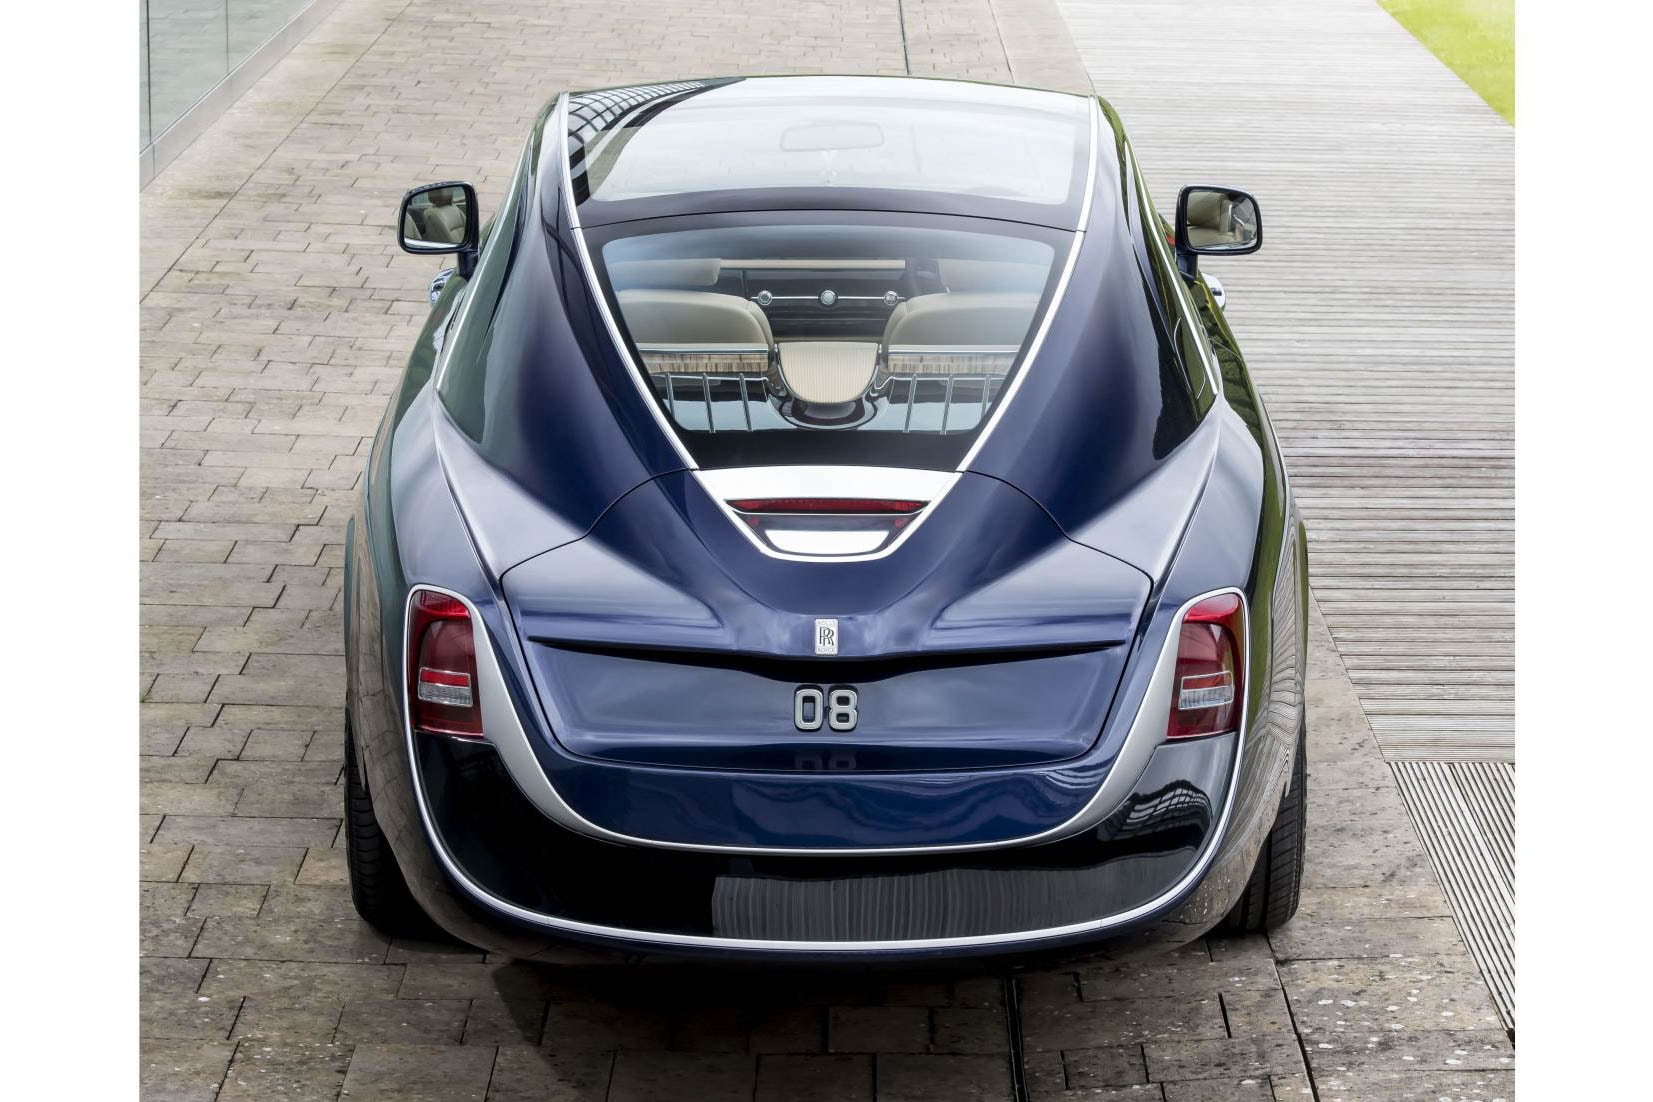 ロールス・ロイス Rolls-Royce が史上最も高級な自動車 Sweptail を発表